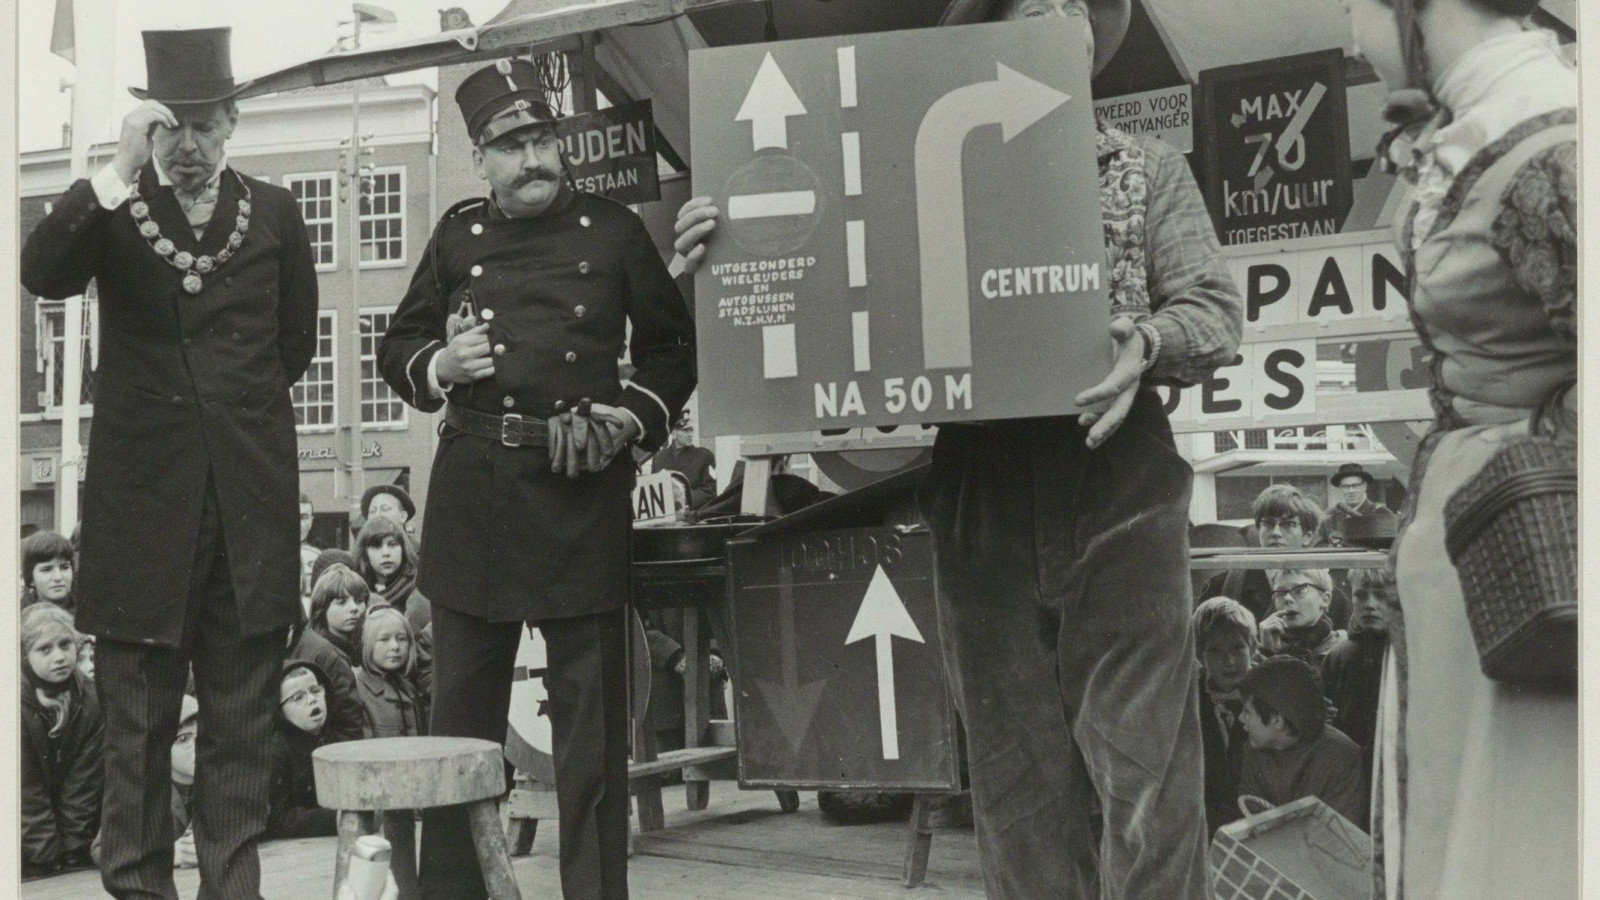 Wagenspel i.v.m. de heropening van de Grote Markt als voetgangersdomein in 1966